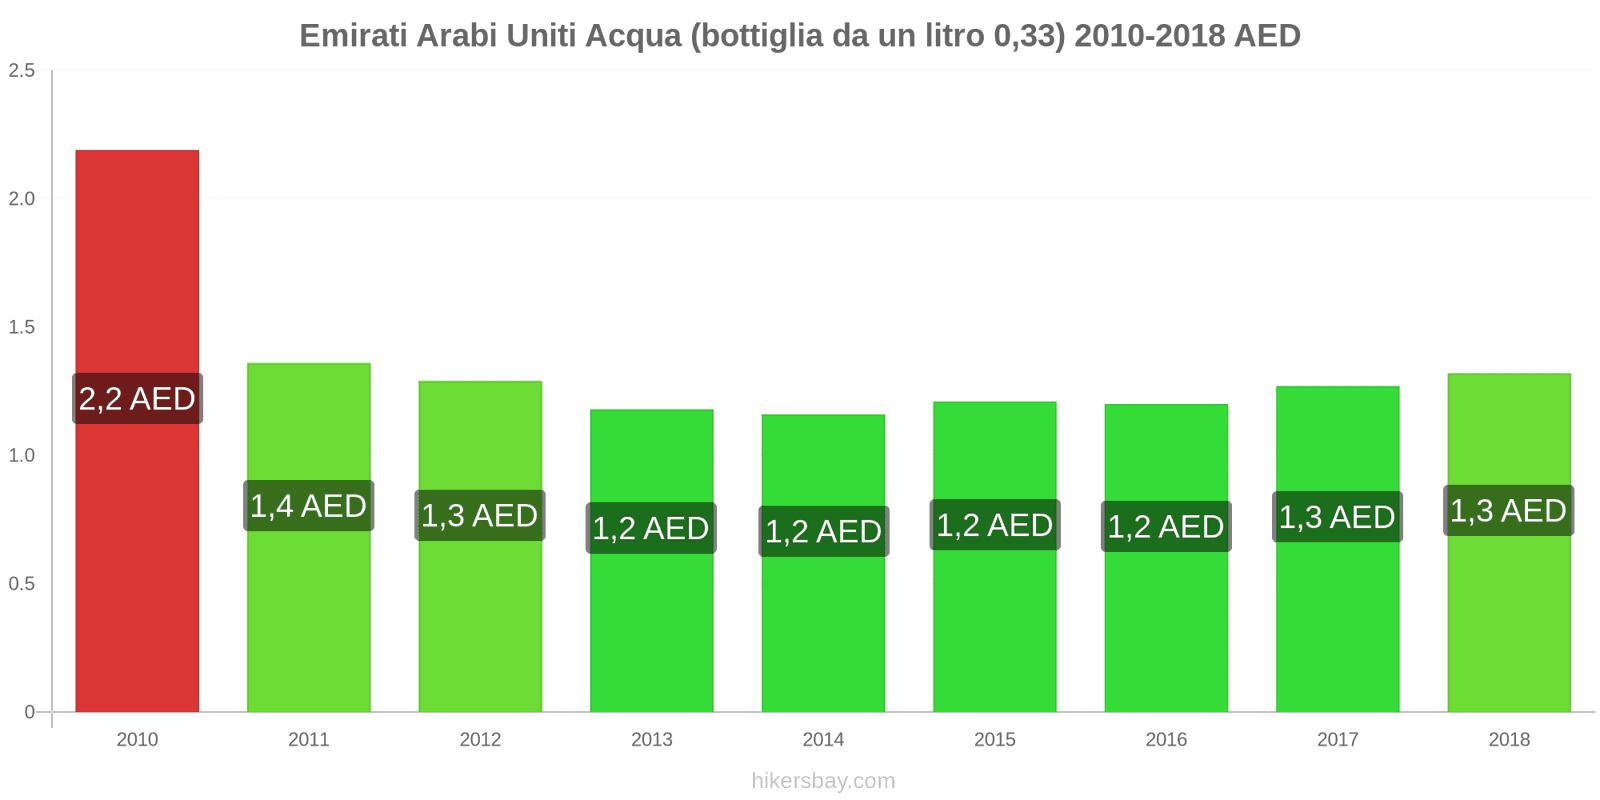 Emirati Arabi Uniti cambi di prezzo Acqua (bottiglia da 0.33 litri) hikersbay.com